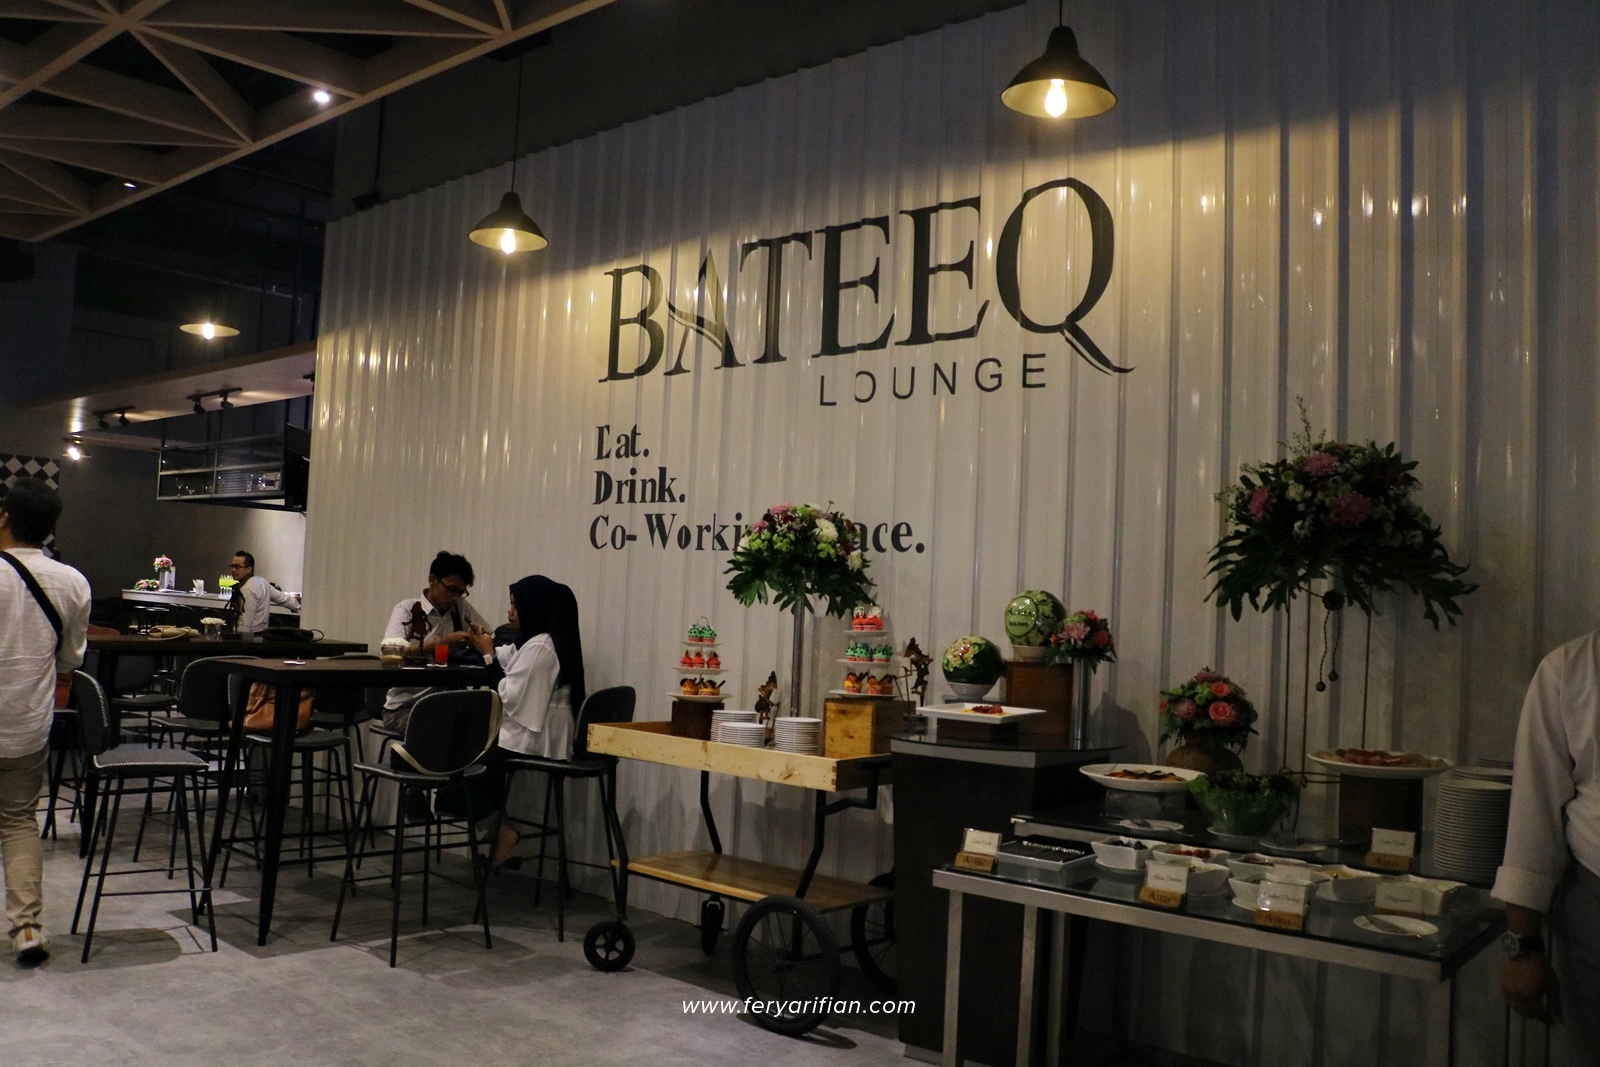 Bateeq Lounge Atria Hotel Malang - Food & Travel Blogger Malang